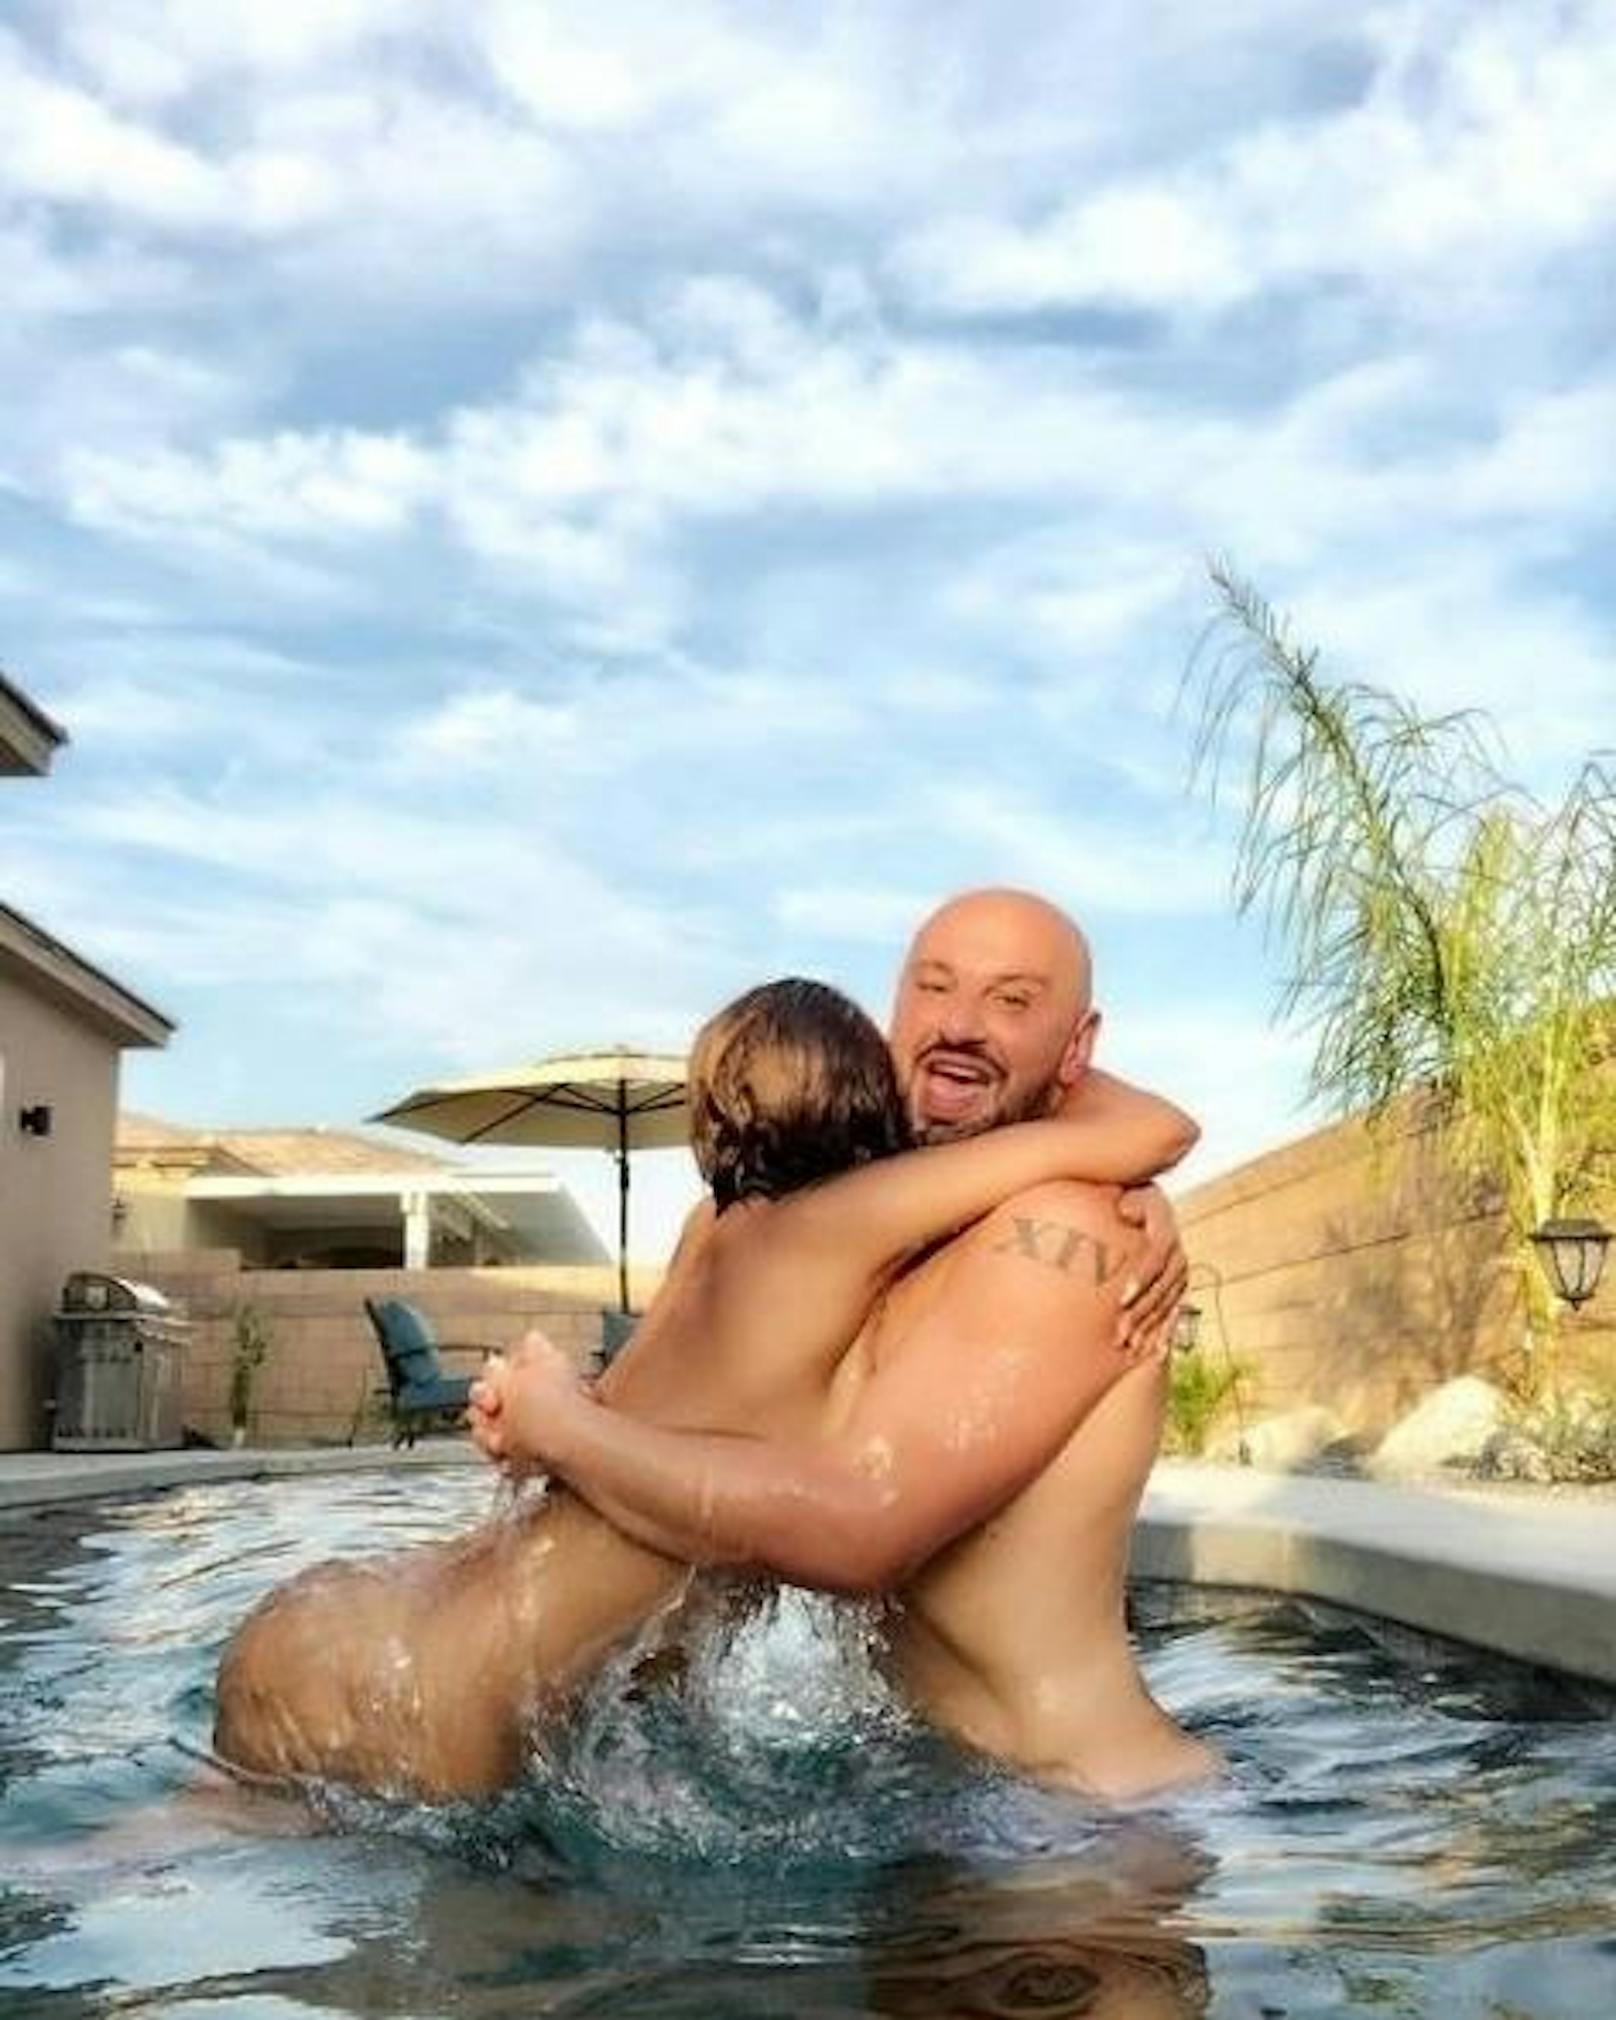 02.08.2018: Nackt wie Gott sie schuf plantscht Mel B gemeinsam mit ihrem besten Freund Gary in einem Schwimmbecken. Er scheint das Nacktbaden sichtlich zu genießen.